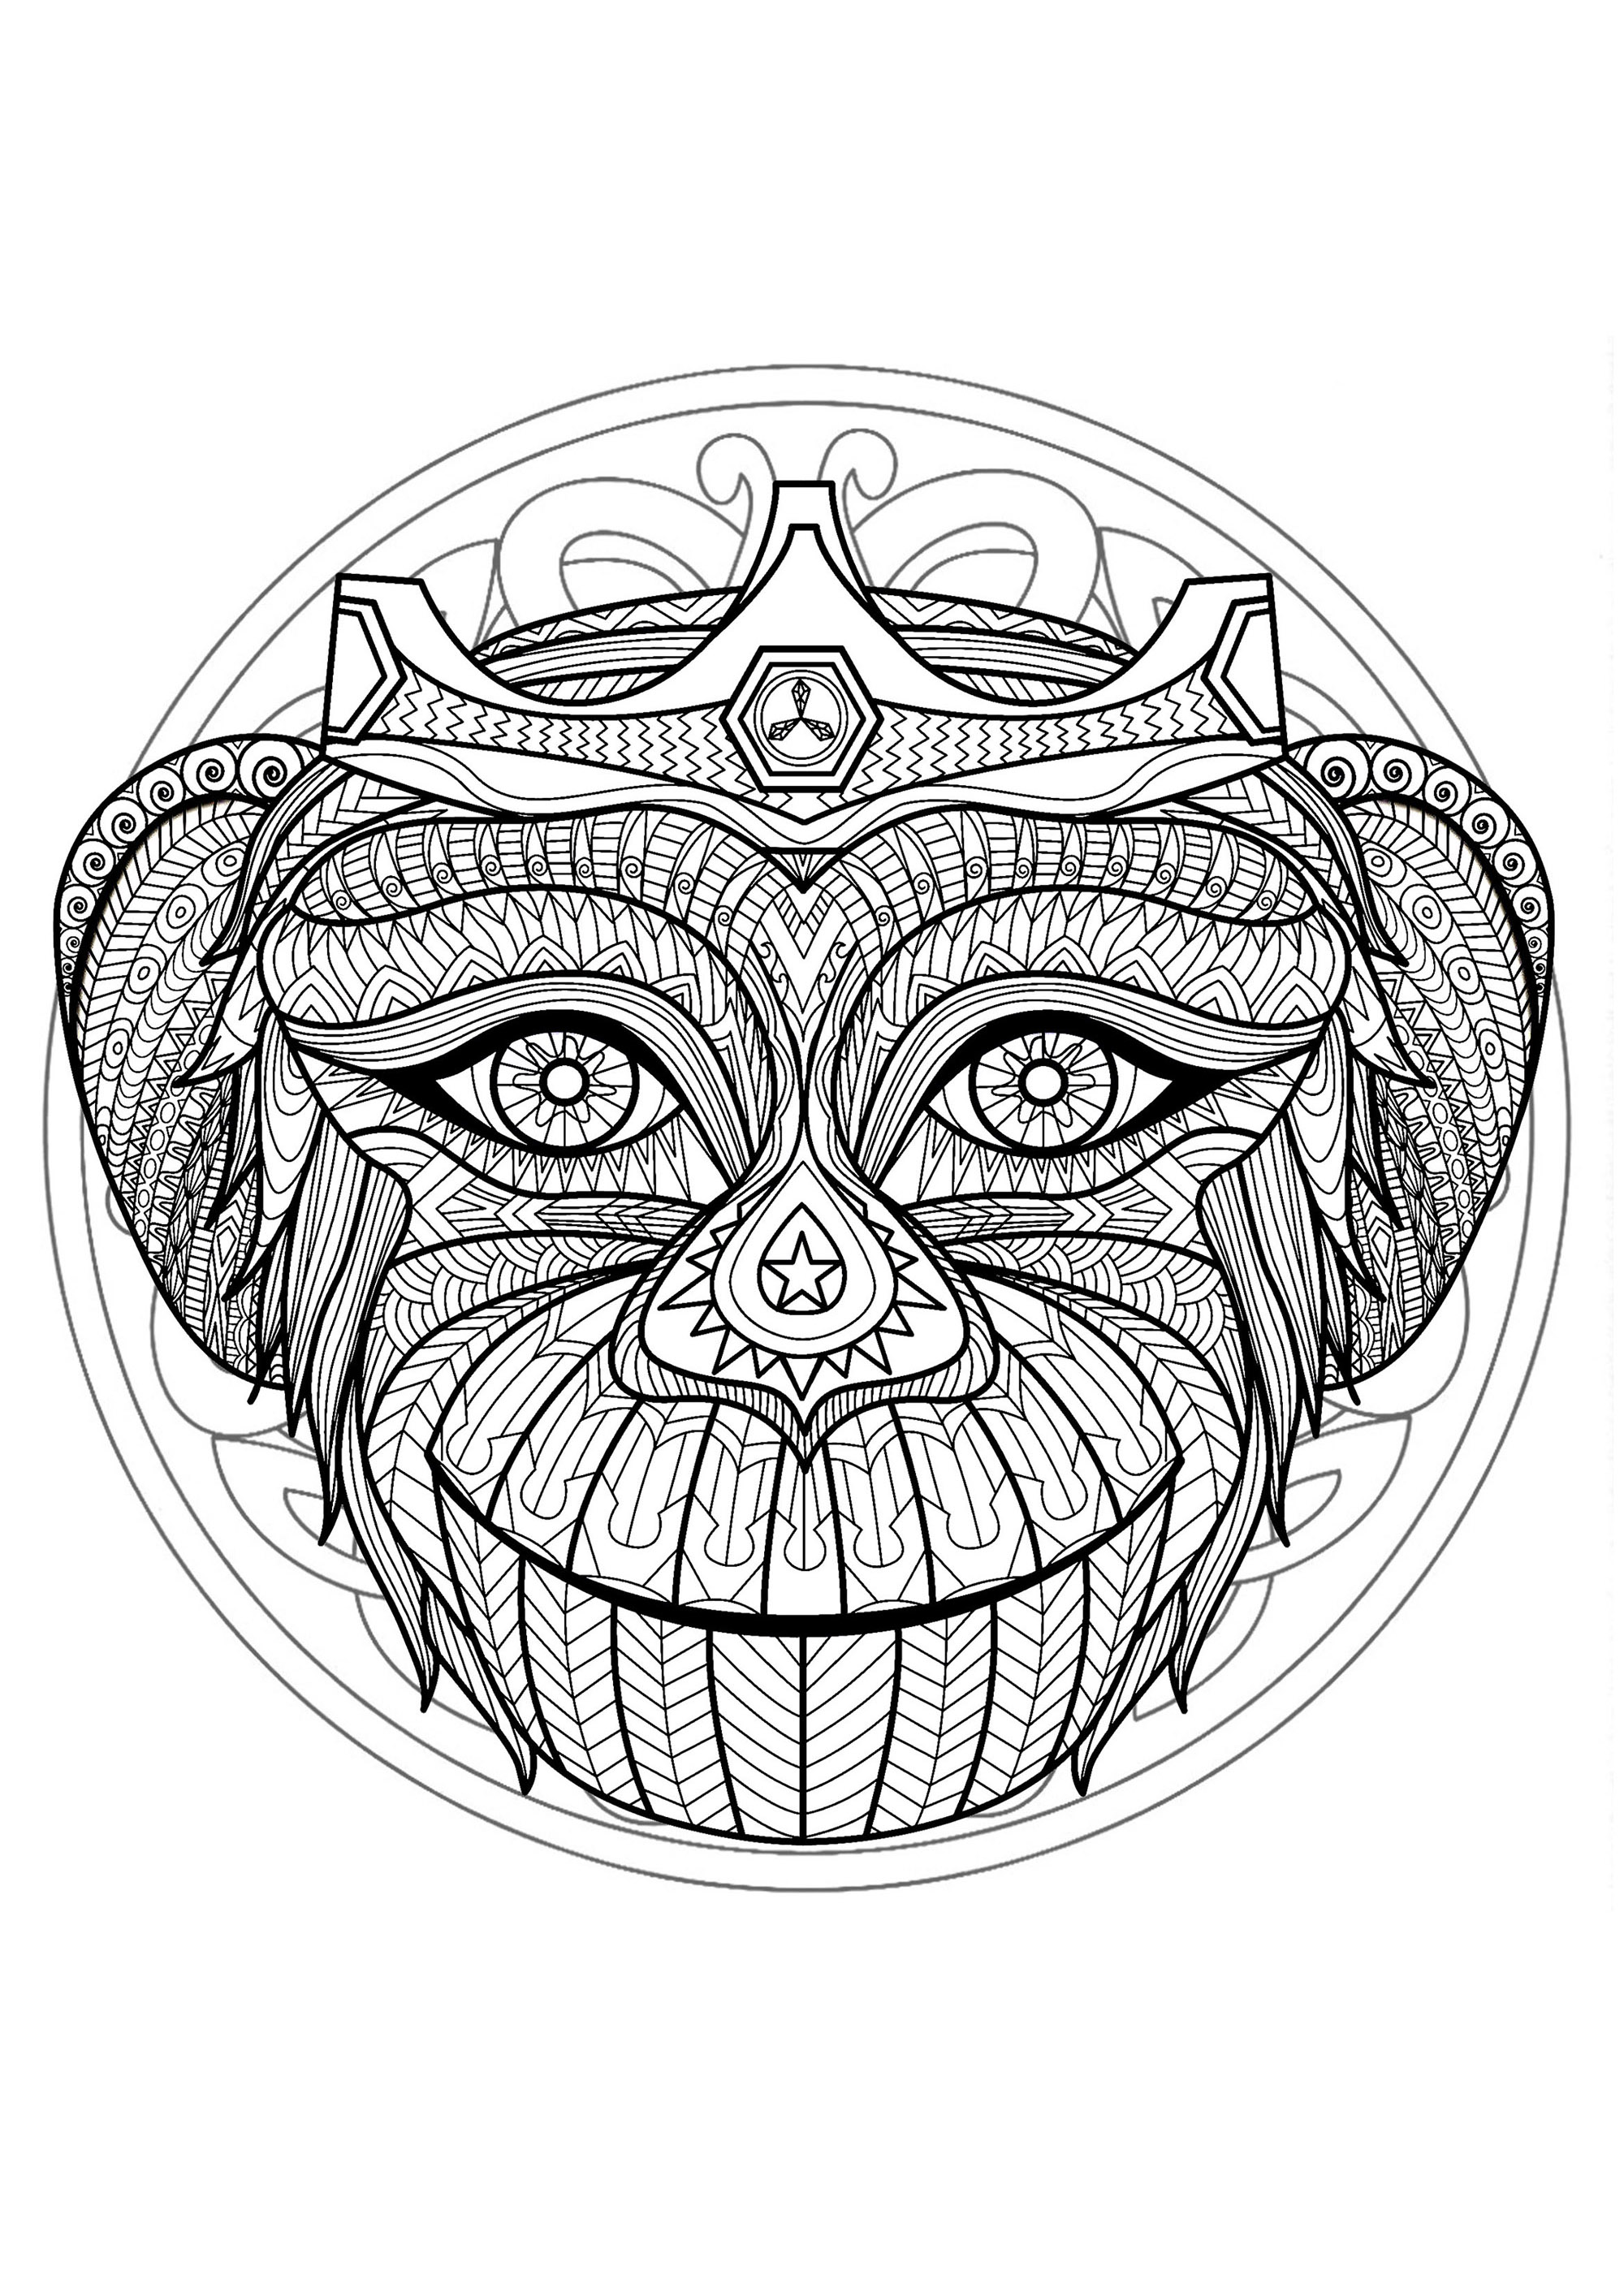 Mandala e cabeça de macaco. Se está pronto para passar uns longos minutos de relaxamento, prepare-se para colorir esta Mandala bastante complexa ... Se quiseres, podes utilizar muitas cores.